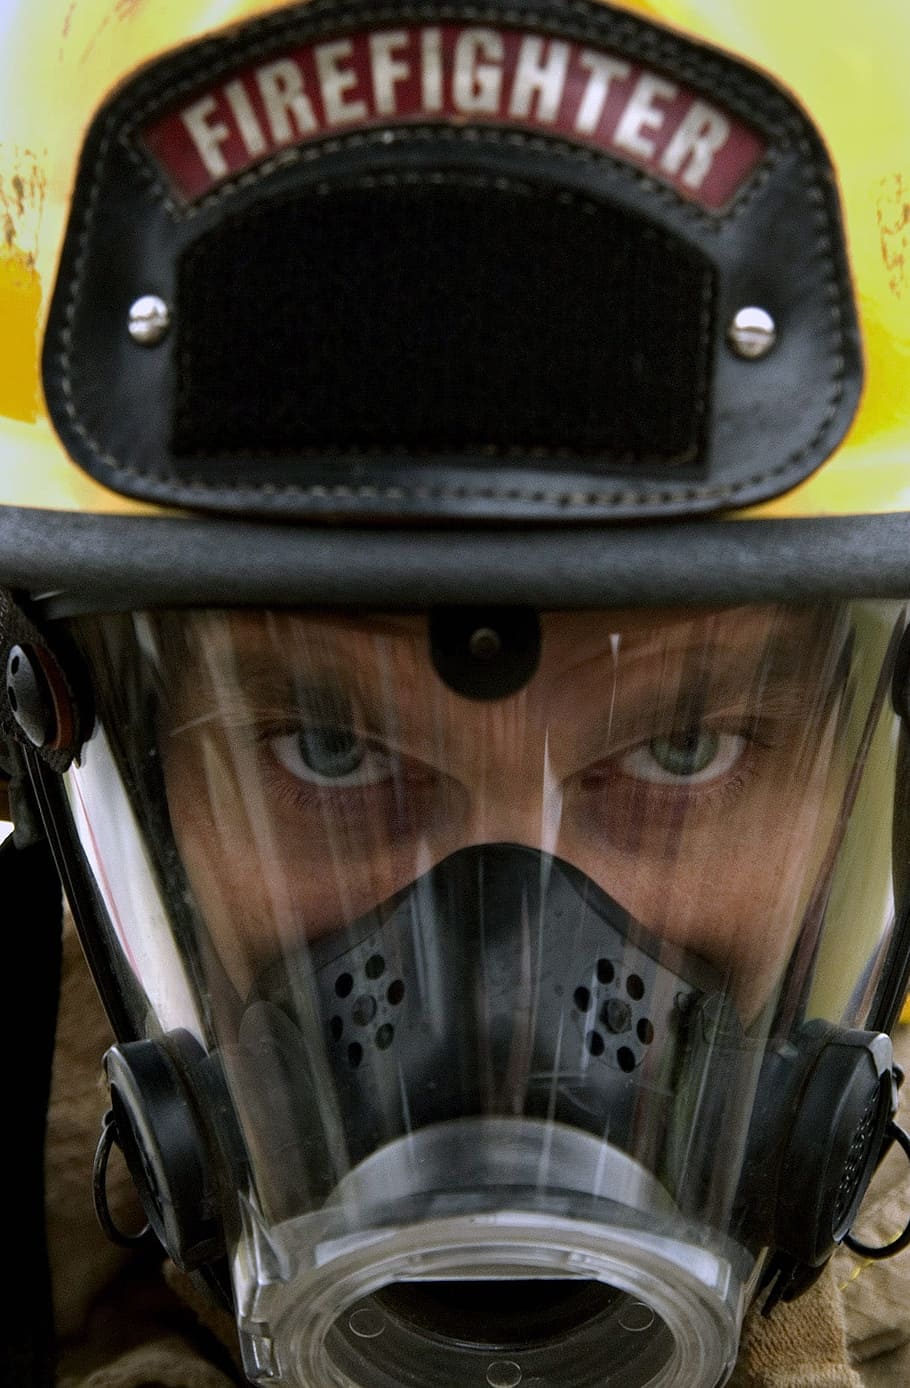 preto, cinza, capacete de bombeiro, bombeiro, capacete, proteção, uniforme, terno, equipamento, segurança